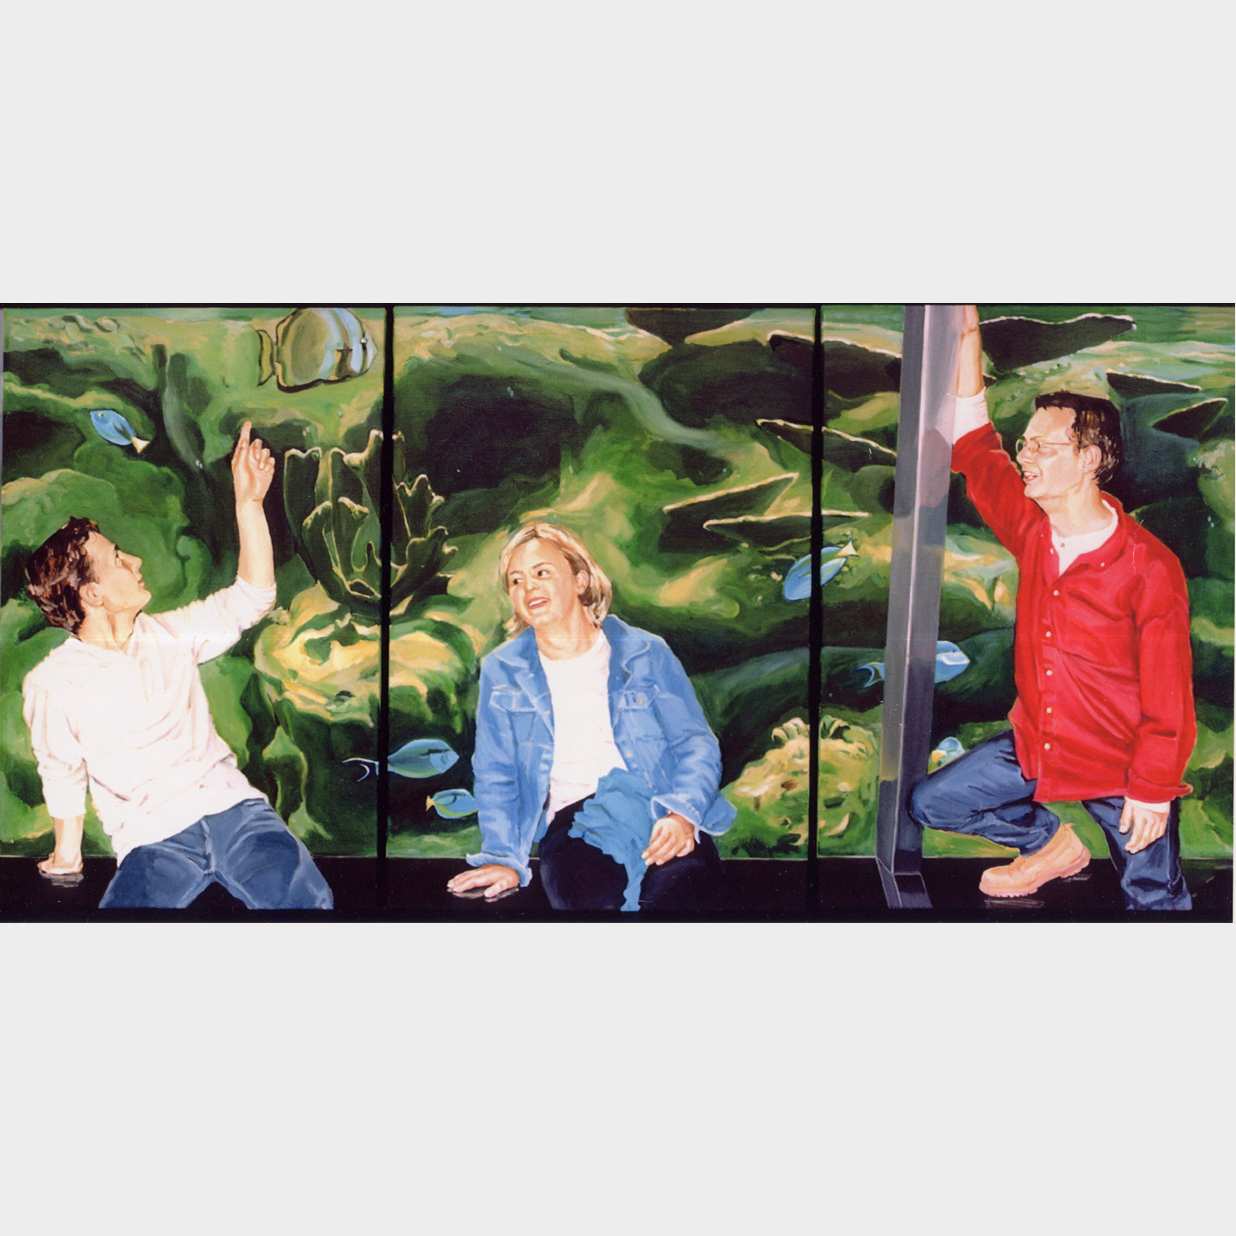 familiedrieluik in Artis, 3 olieverfschilderijen van 50 x 100 cm, 1998